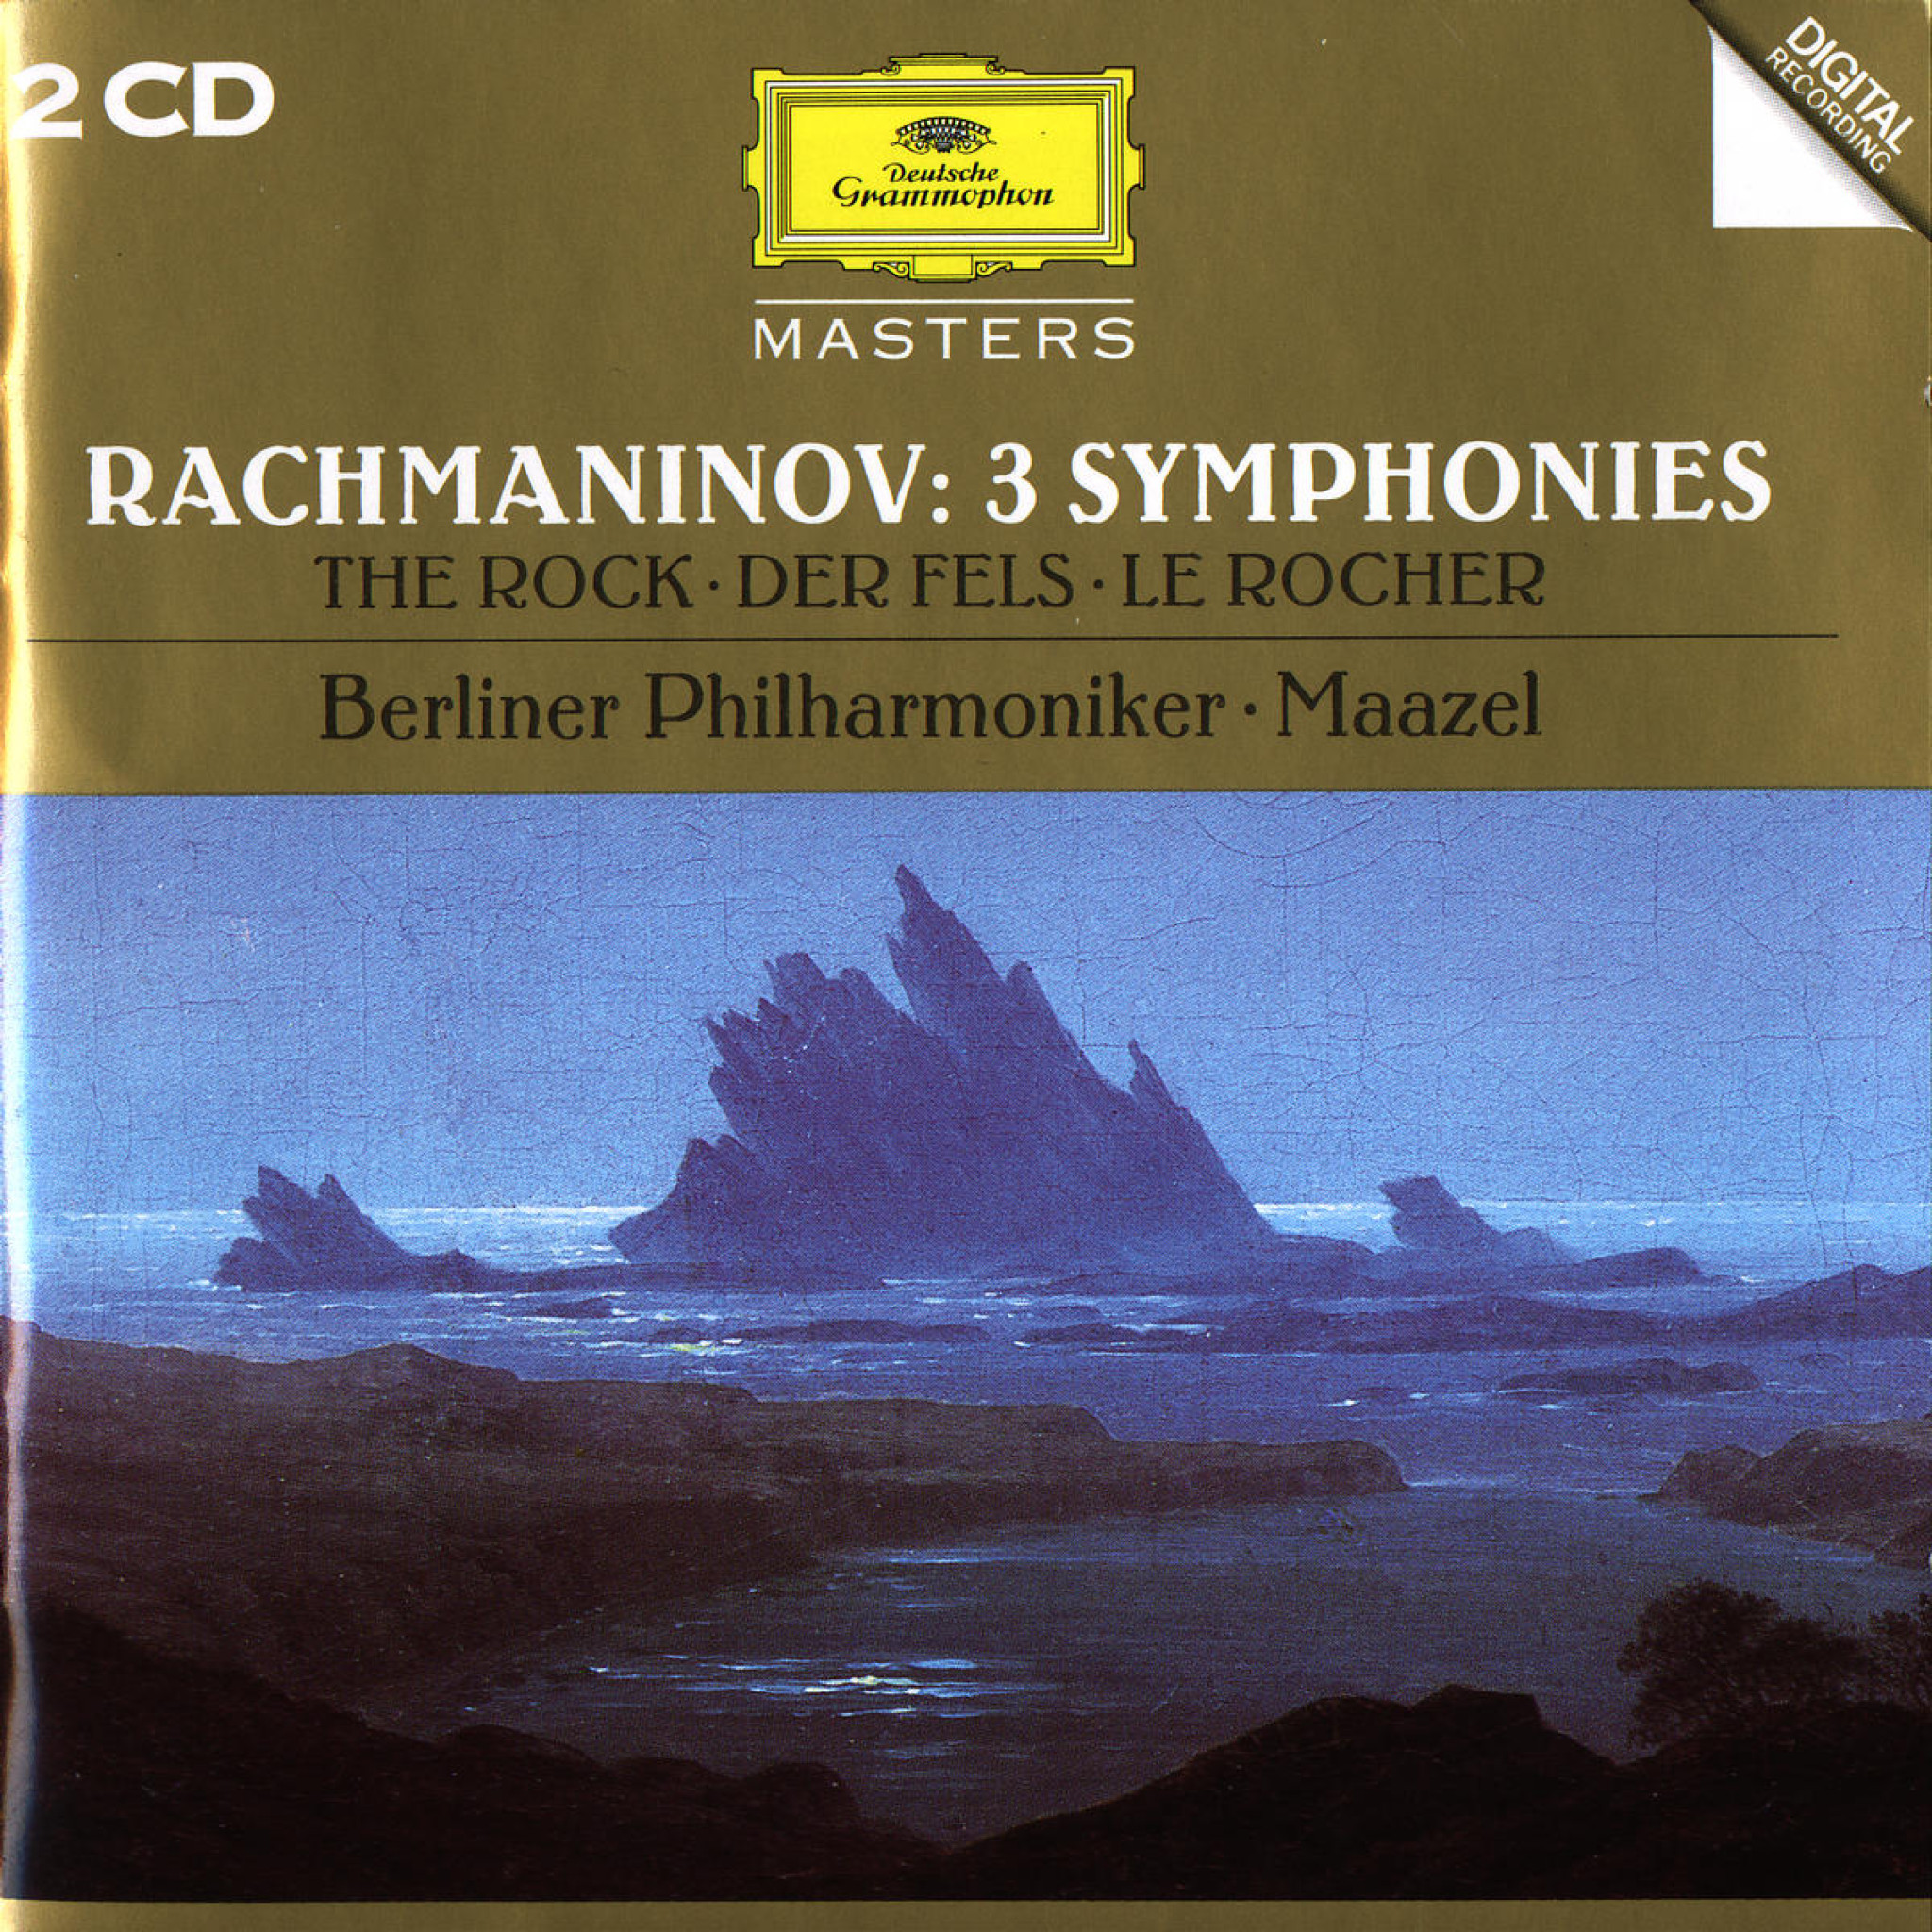 Rachmaninov: 3 Symphonies 0028944559028